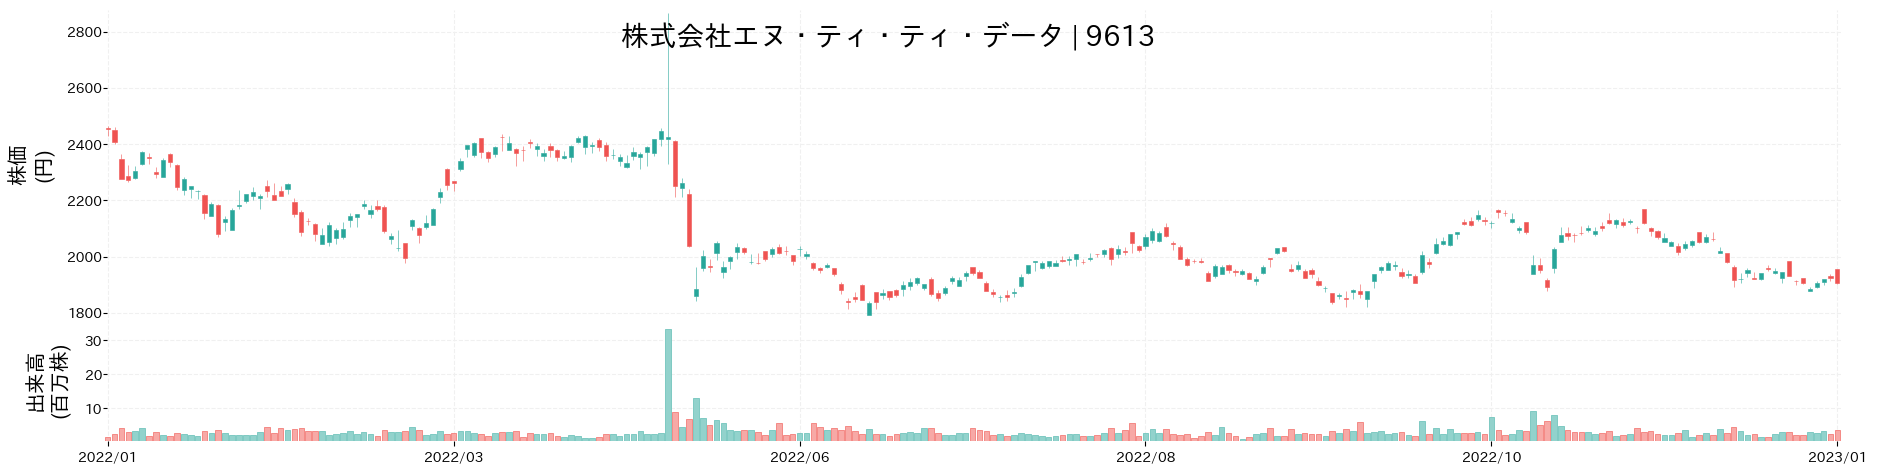 エヌ・ティ・ティ・データの株価推移(2022)